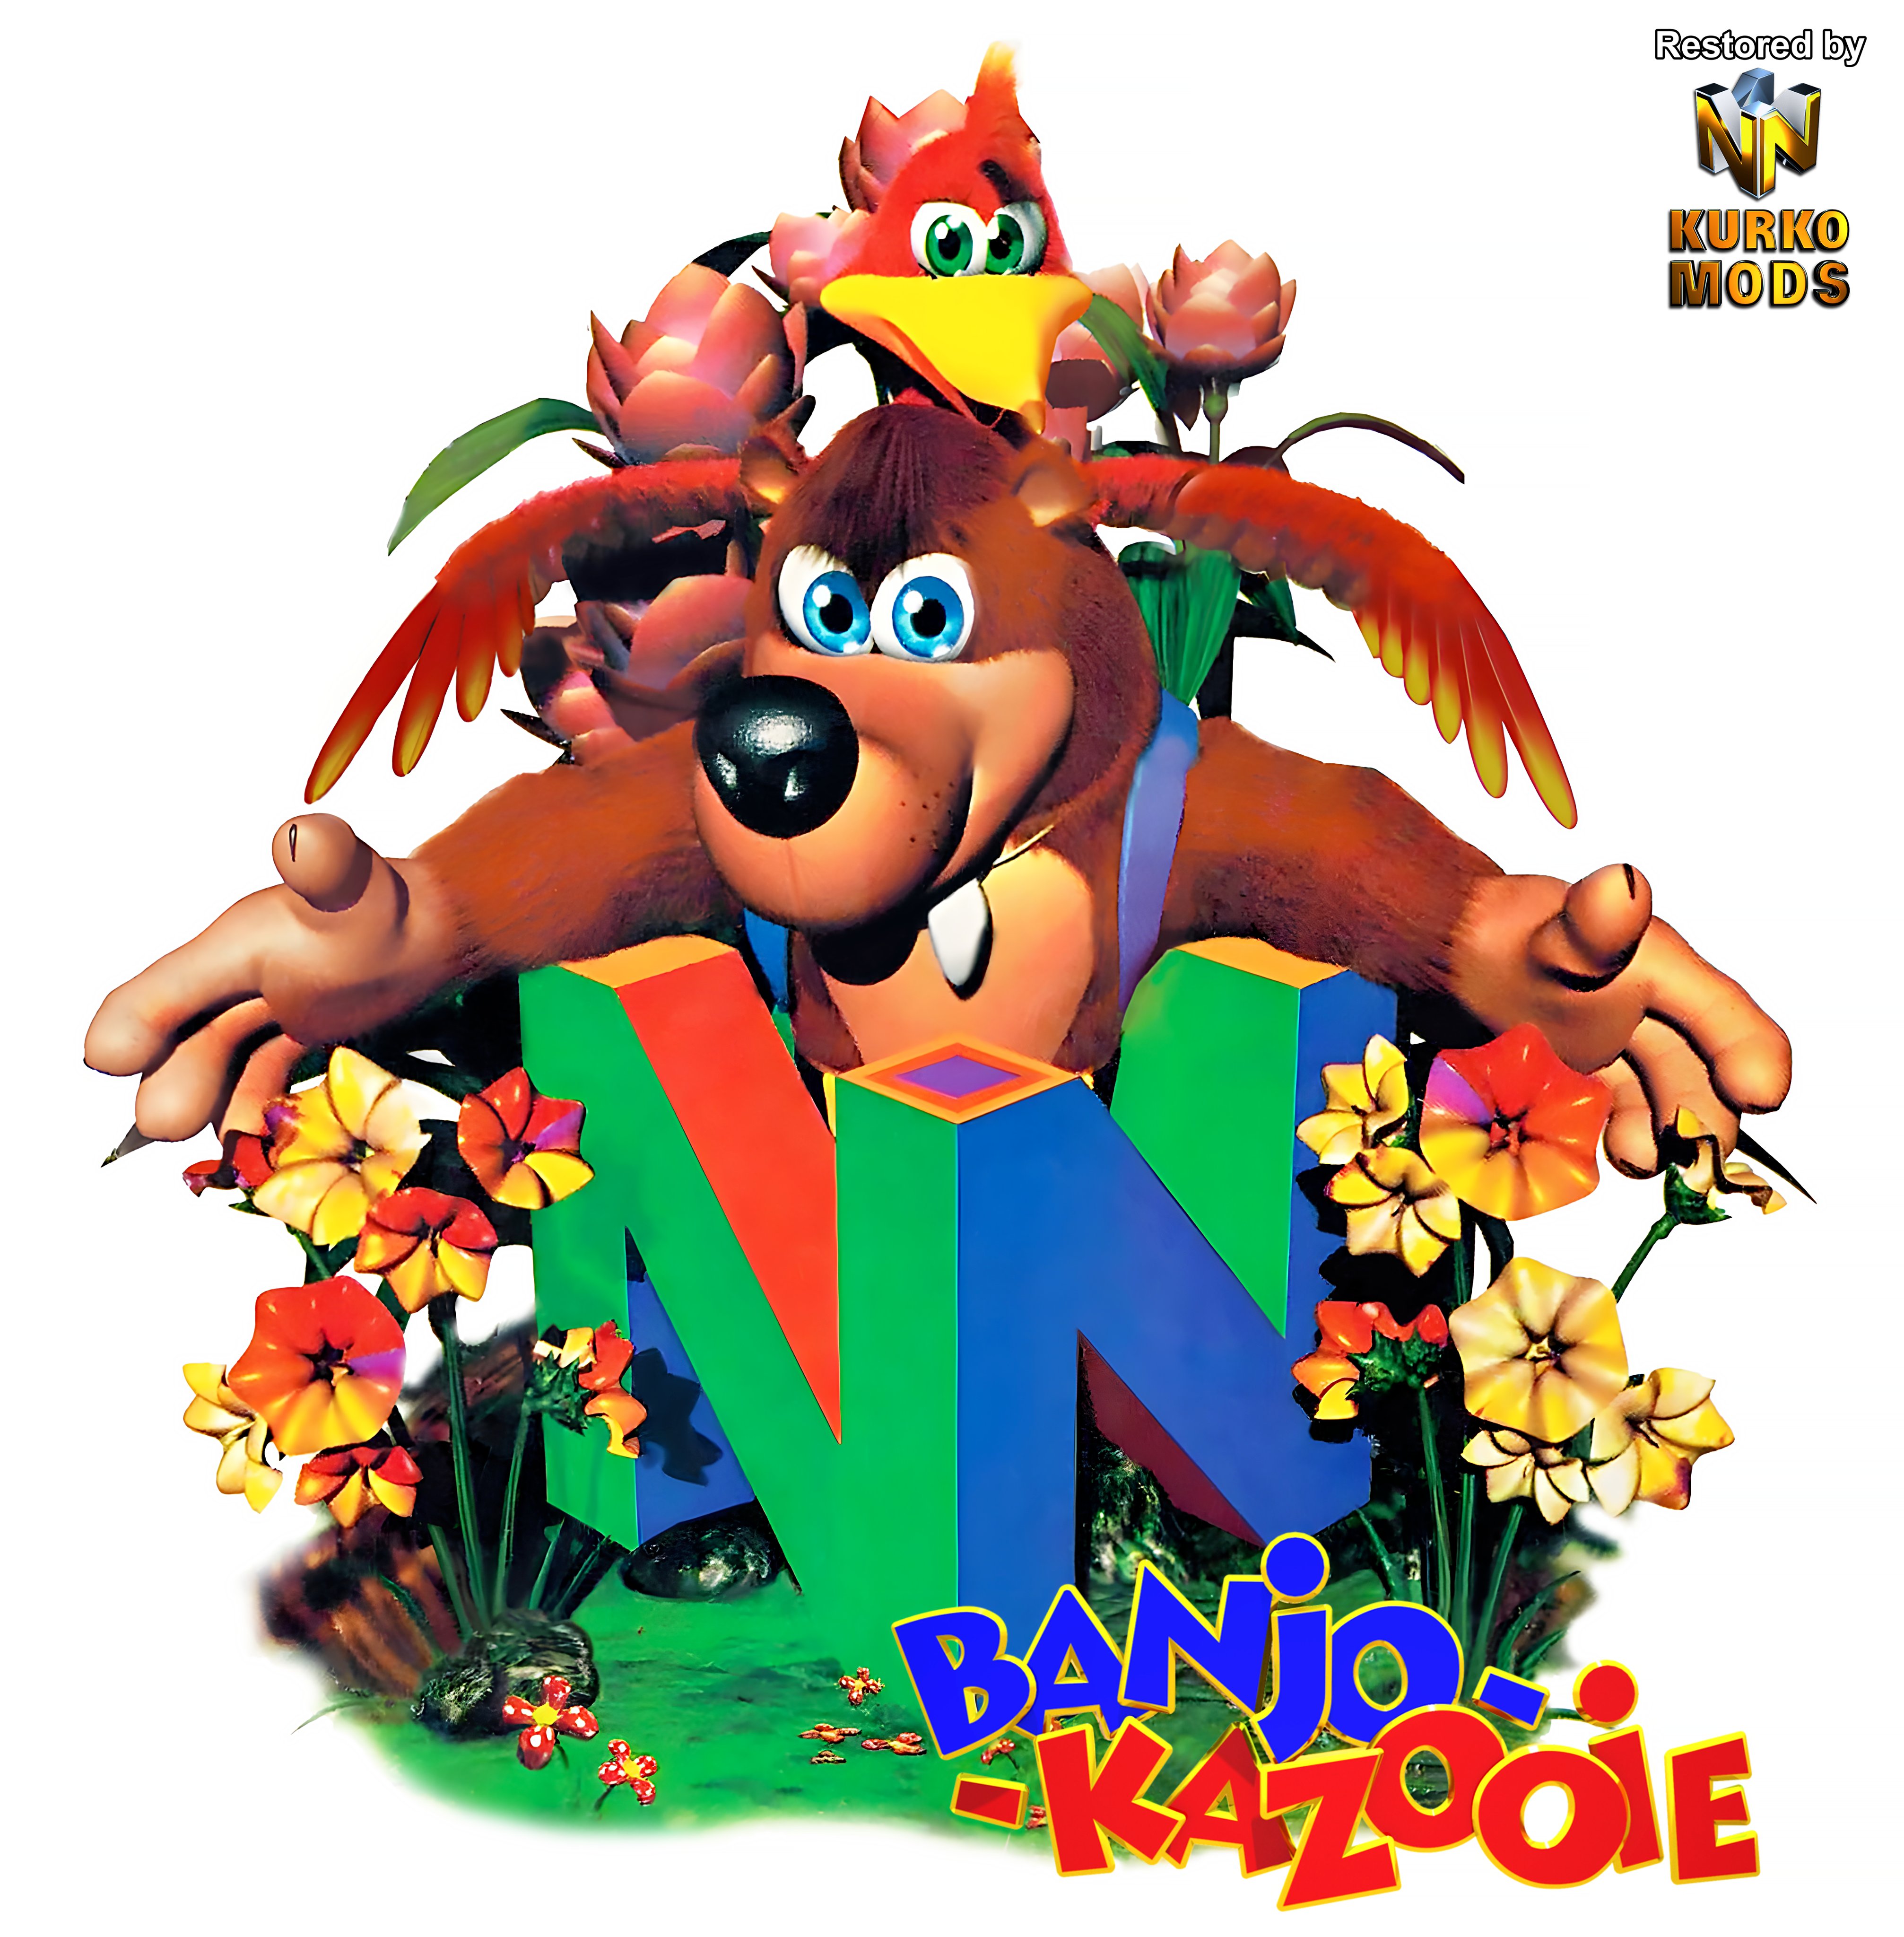 Banjo-Kazooie Image: Banjo-Kazooie (N64)